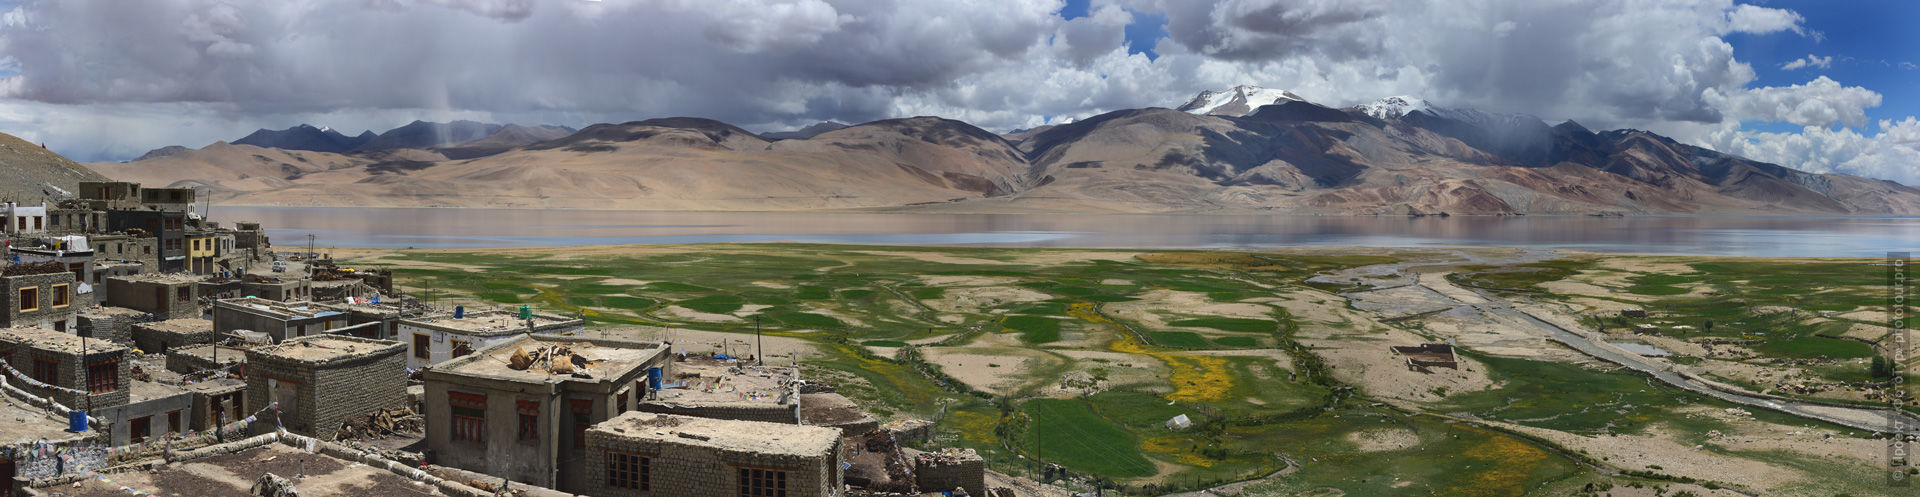 Photo of a mirror of reflections on Lake Tso Moriri overlooking the village of Karzok, Ladakh. Expedition Tibet Lake-2: Pangong, Tso Moriri, Tso Kar, Tso Startsapak, Leh-Manali highway.